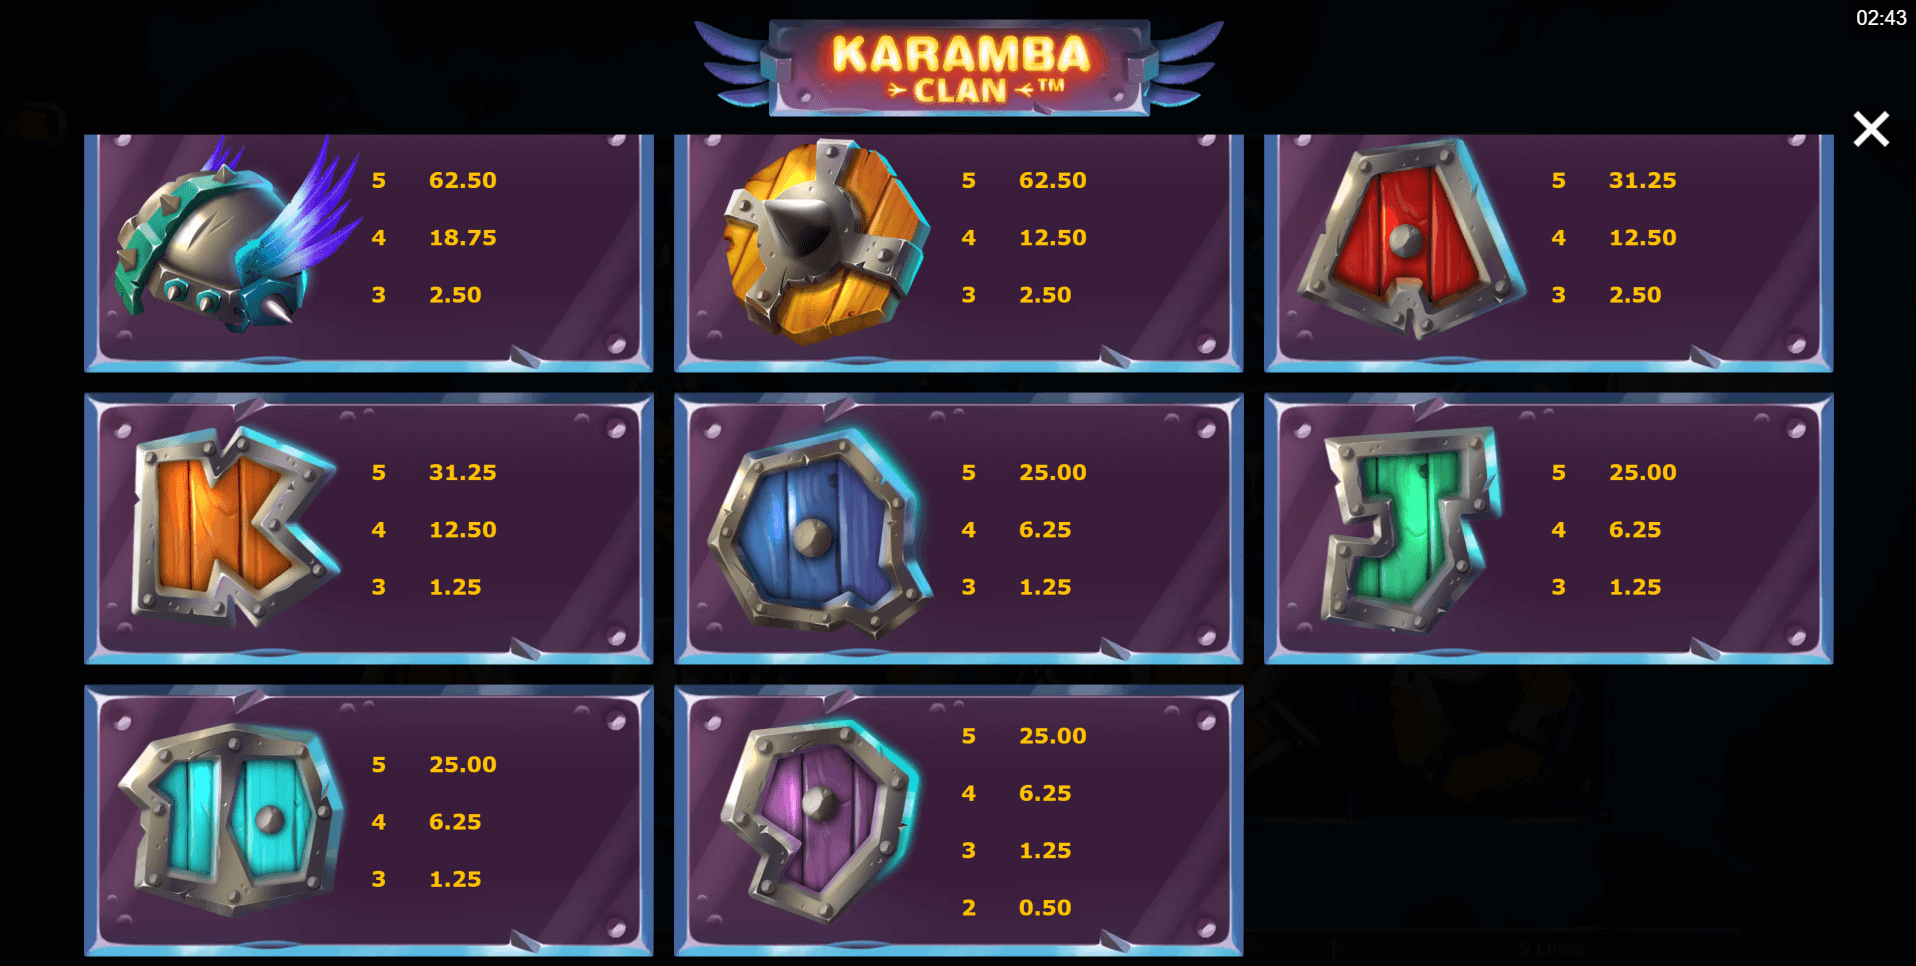 karamba clan slot machine detail image 1